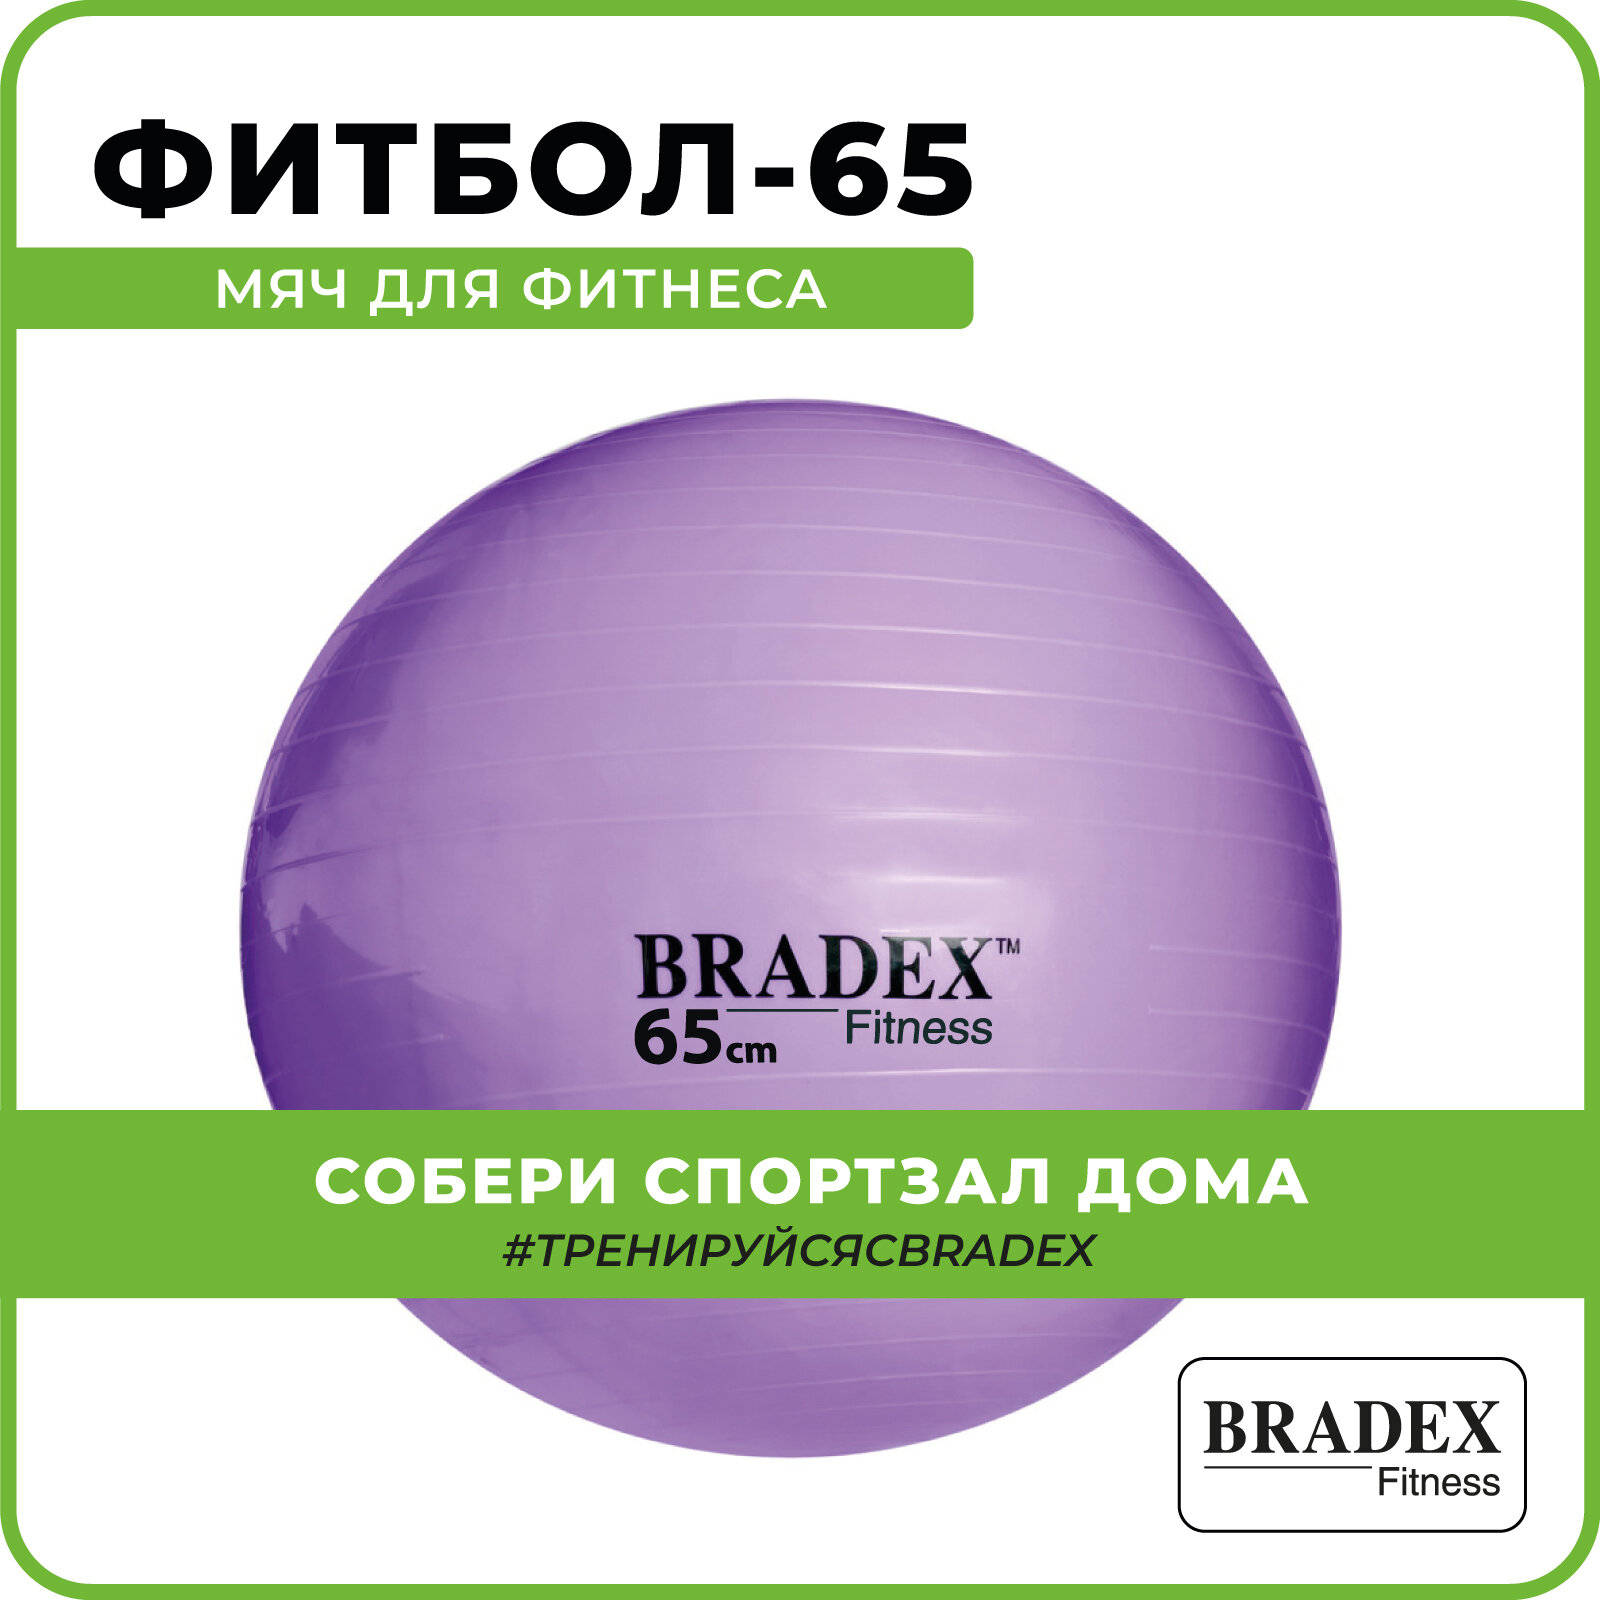 Мяч Bradex «ФИТБОЛ-65» SF 0718 для фитнеса с насосом, фиолетовый